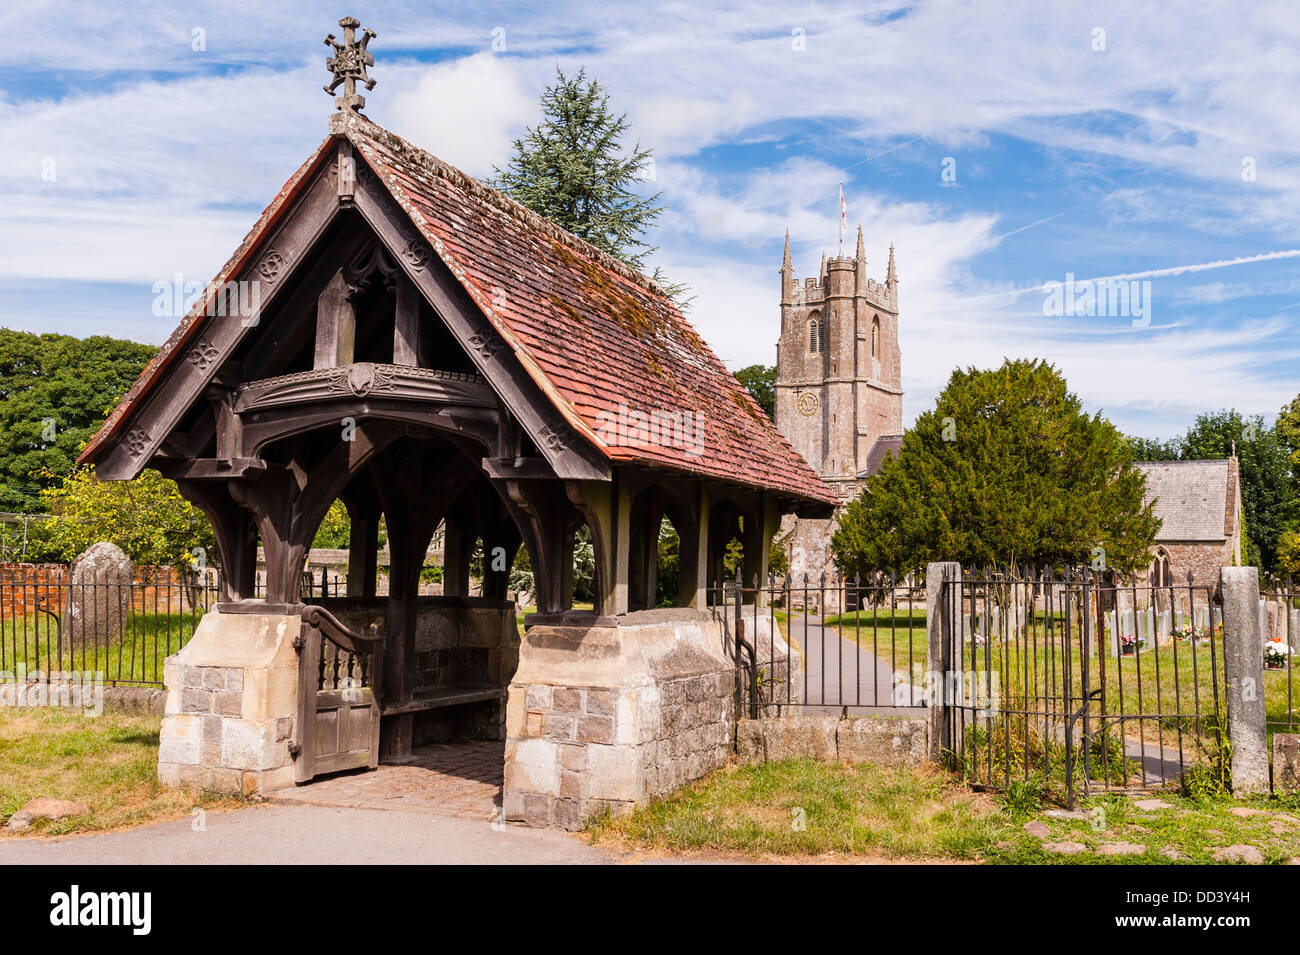 Die Pfarrkirche St. Jakob in Avebury, Wiltshire, England, Großbritannien, Uk Stockfoto